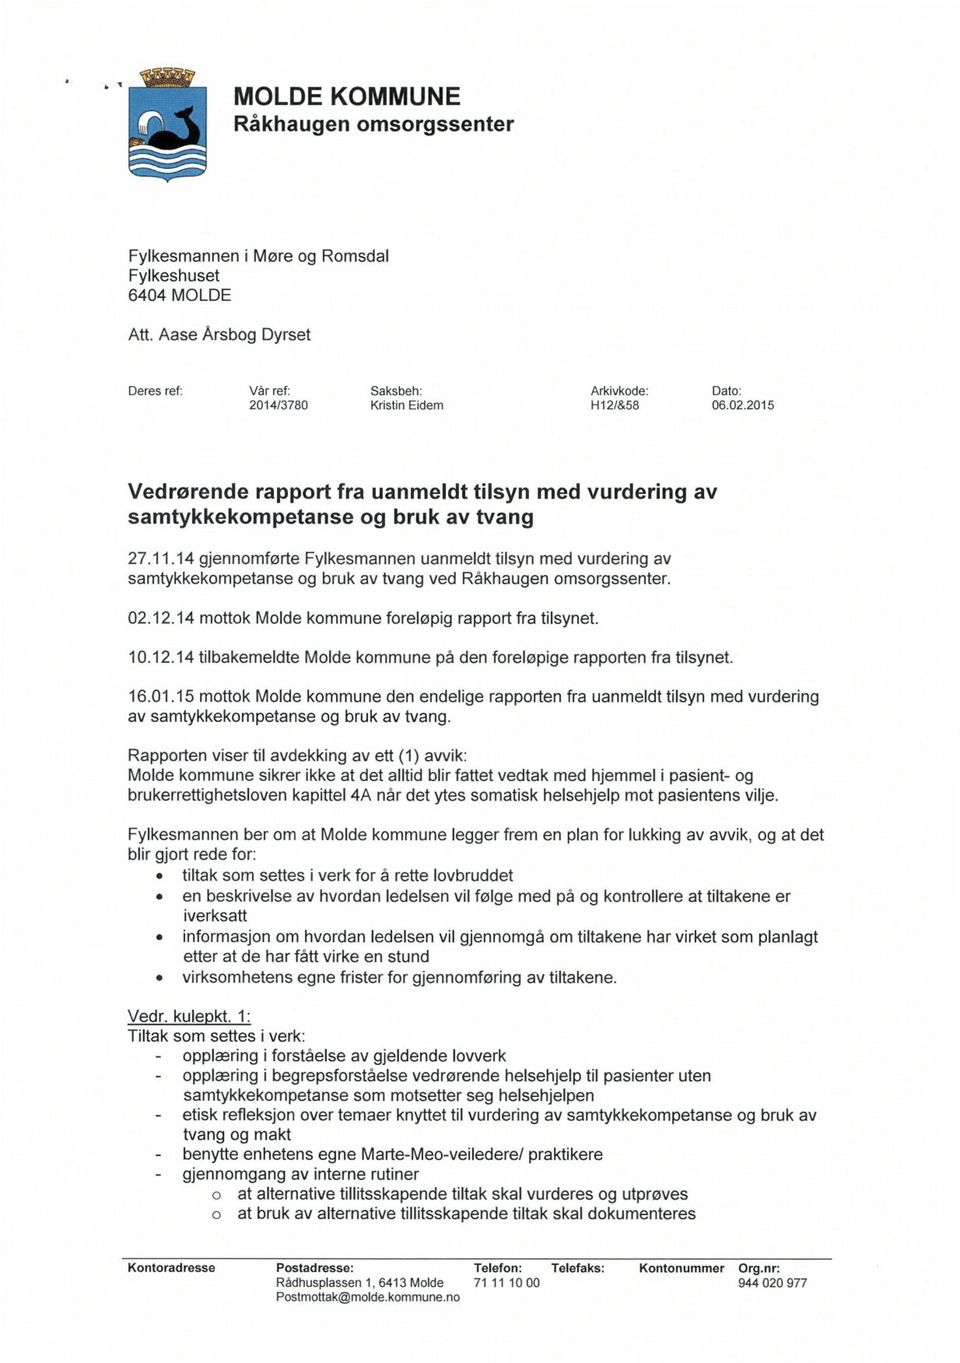 14 gjennomførte Fylkesmannen uanmeldt tilsyn med vurdering av samtykkekompetanse og bruk av tvang ved Råkhaugen omsorgssenter. 02.12.